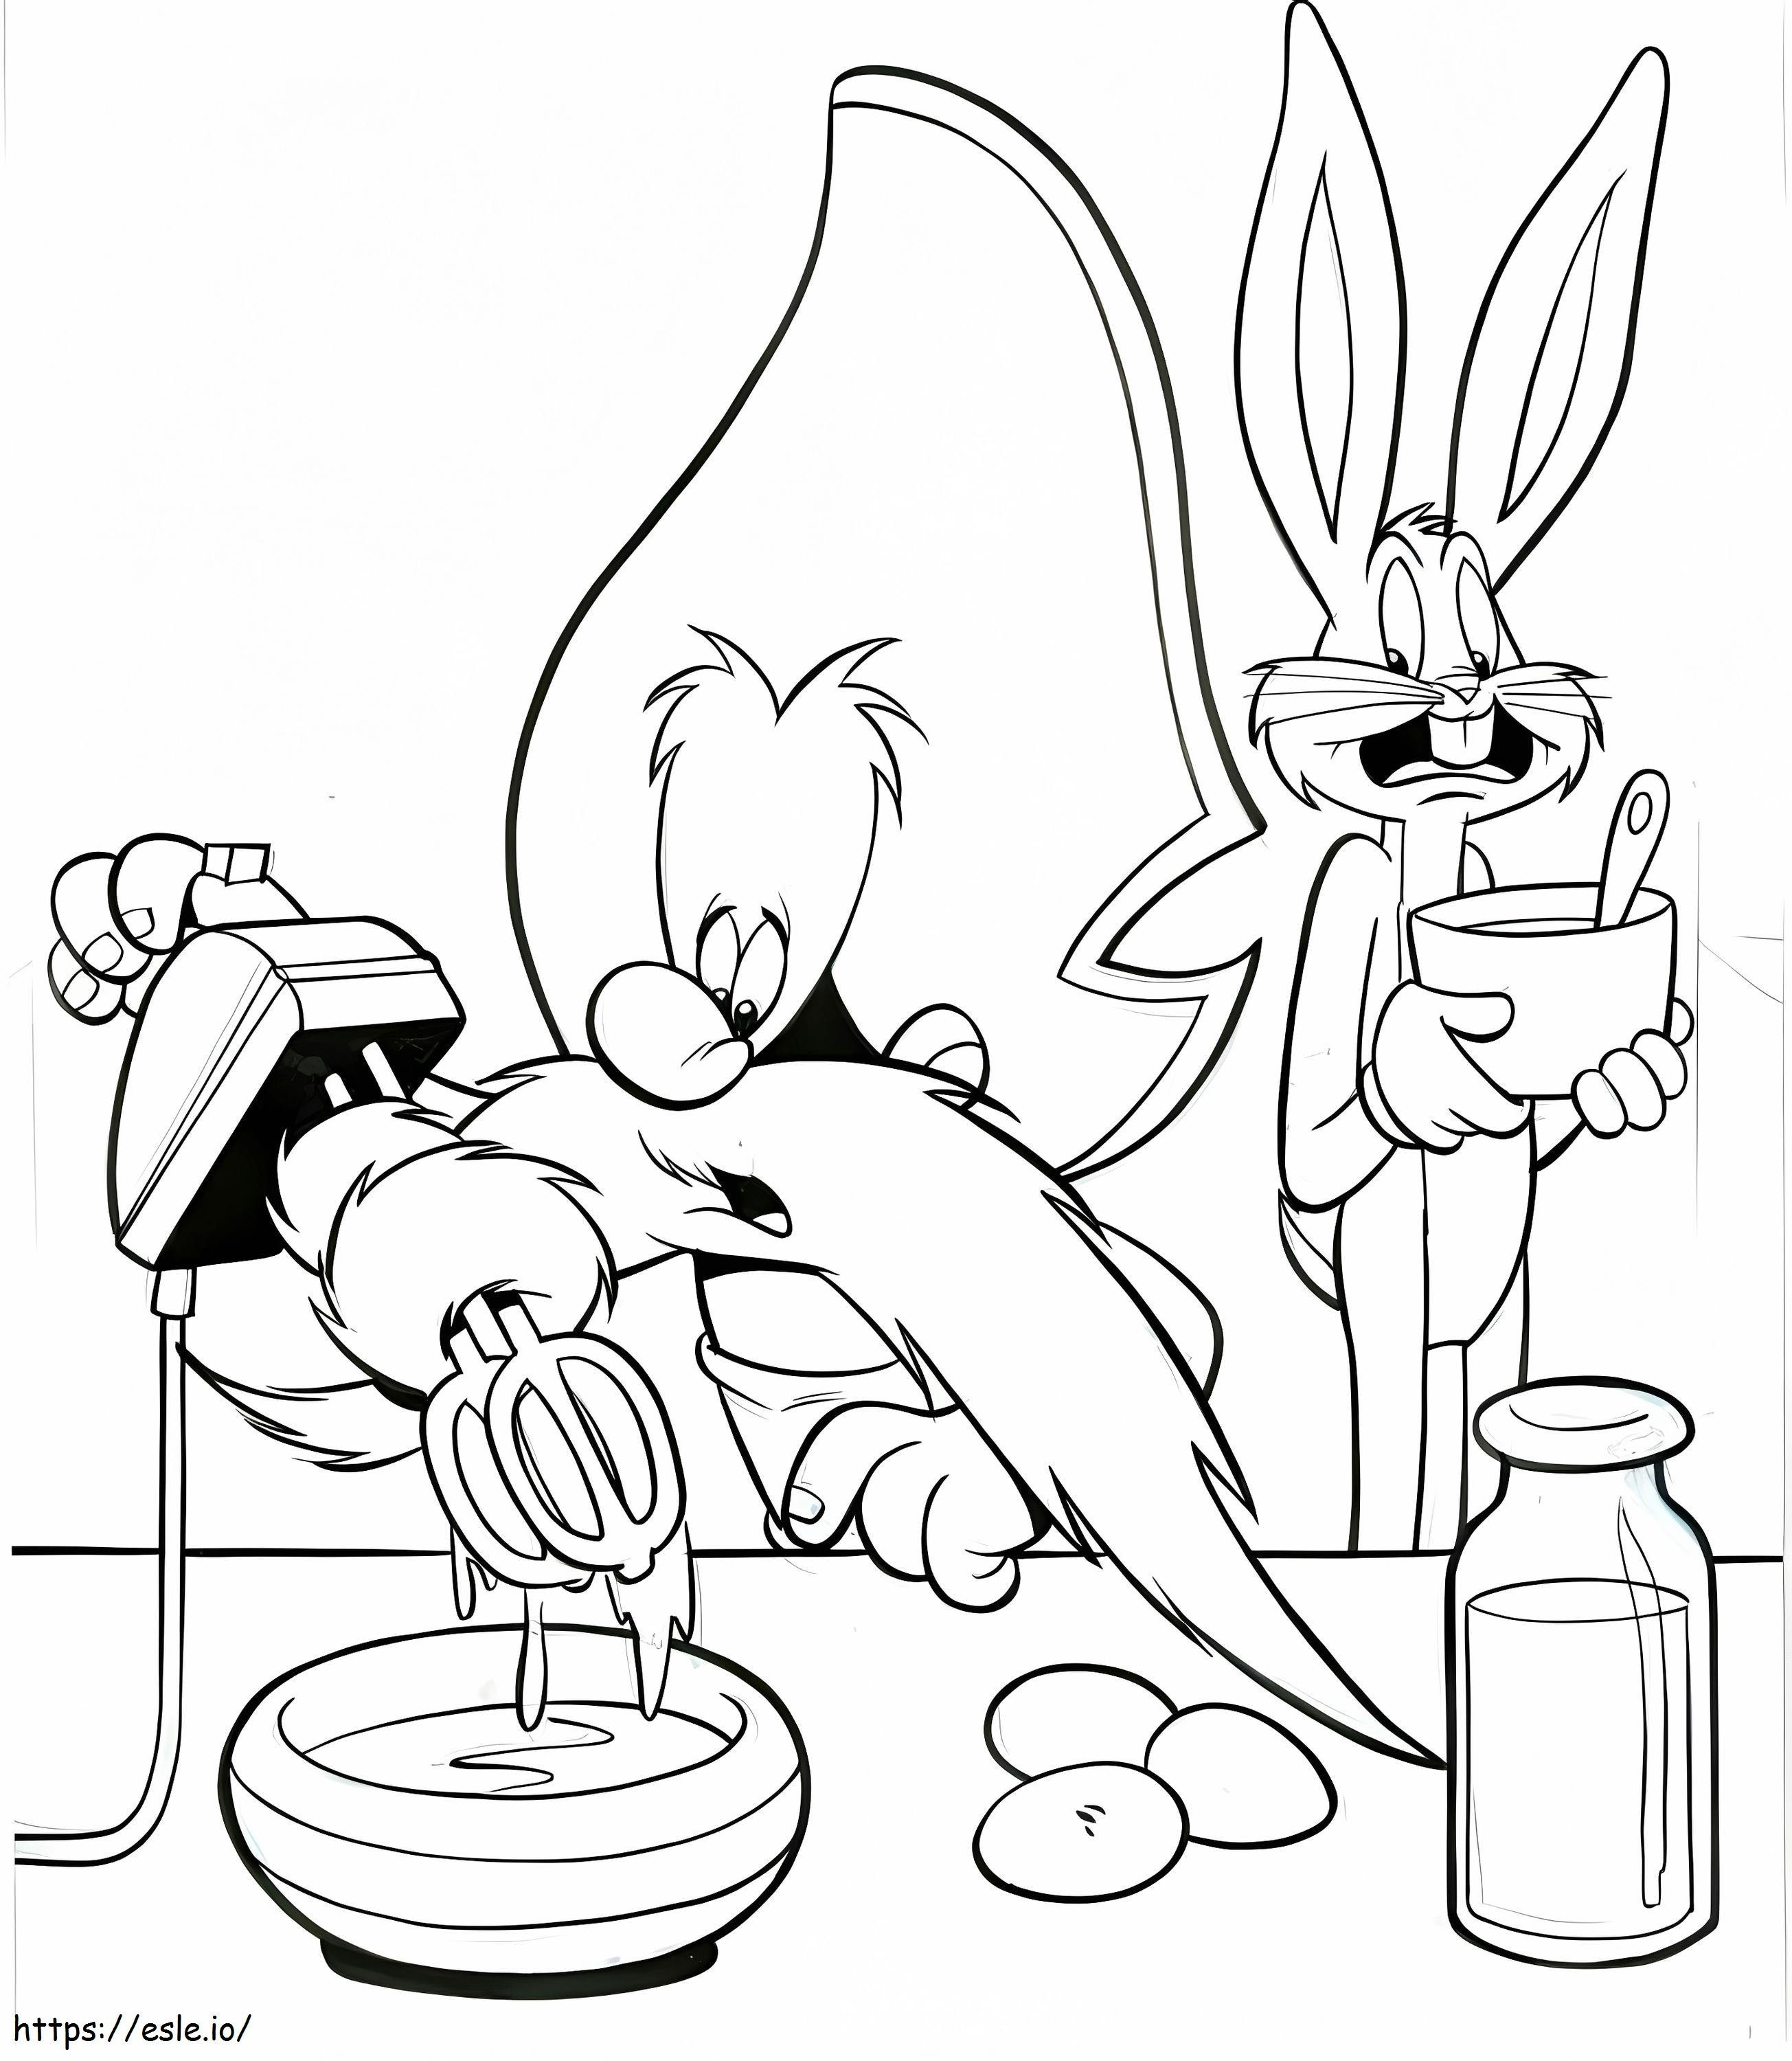 Bugs Bunny ve Yosemite Sam boyama